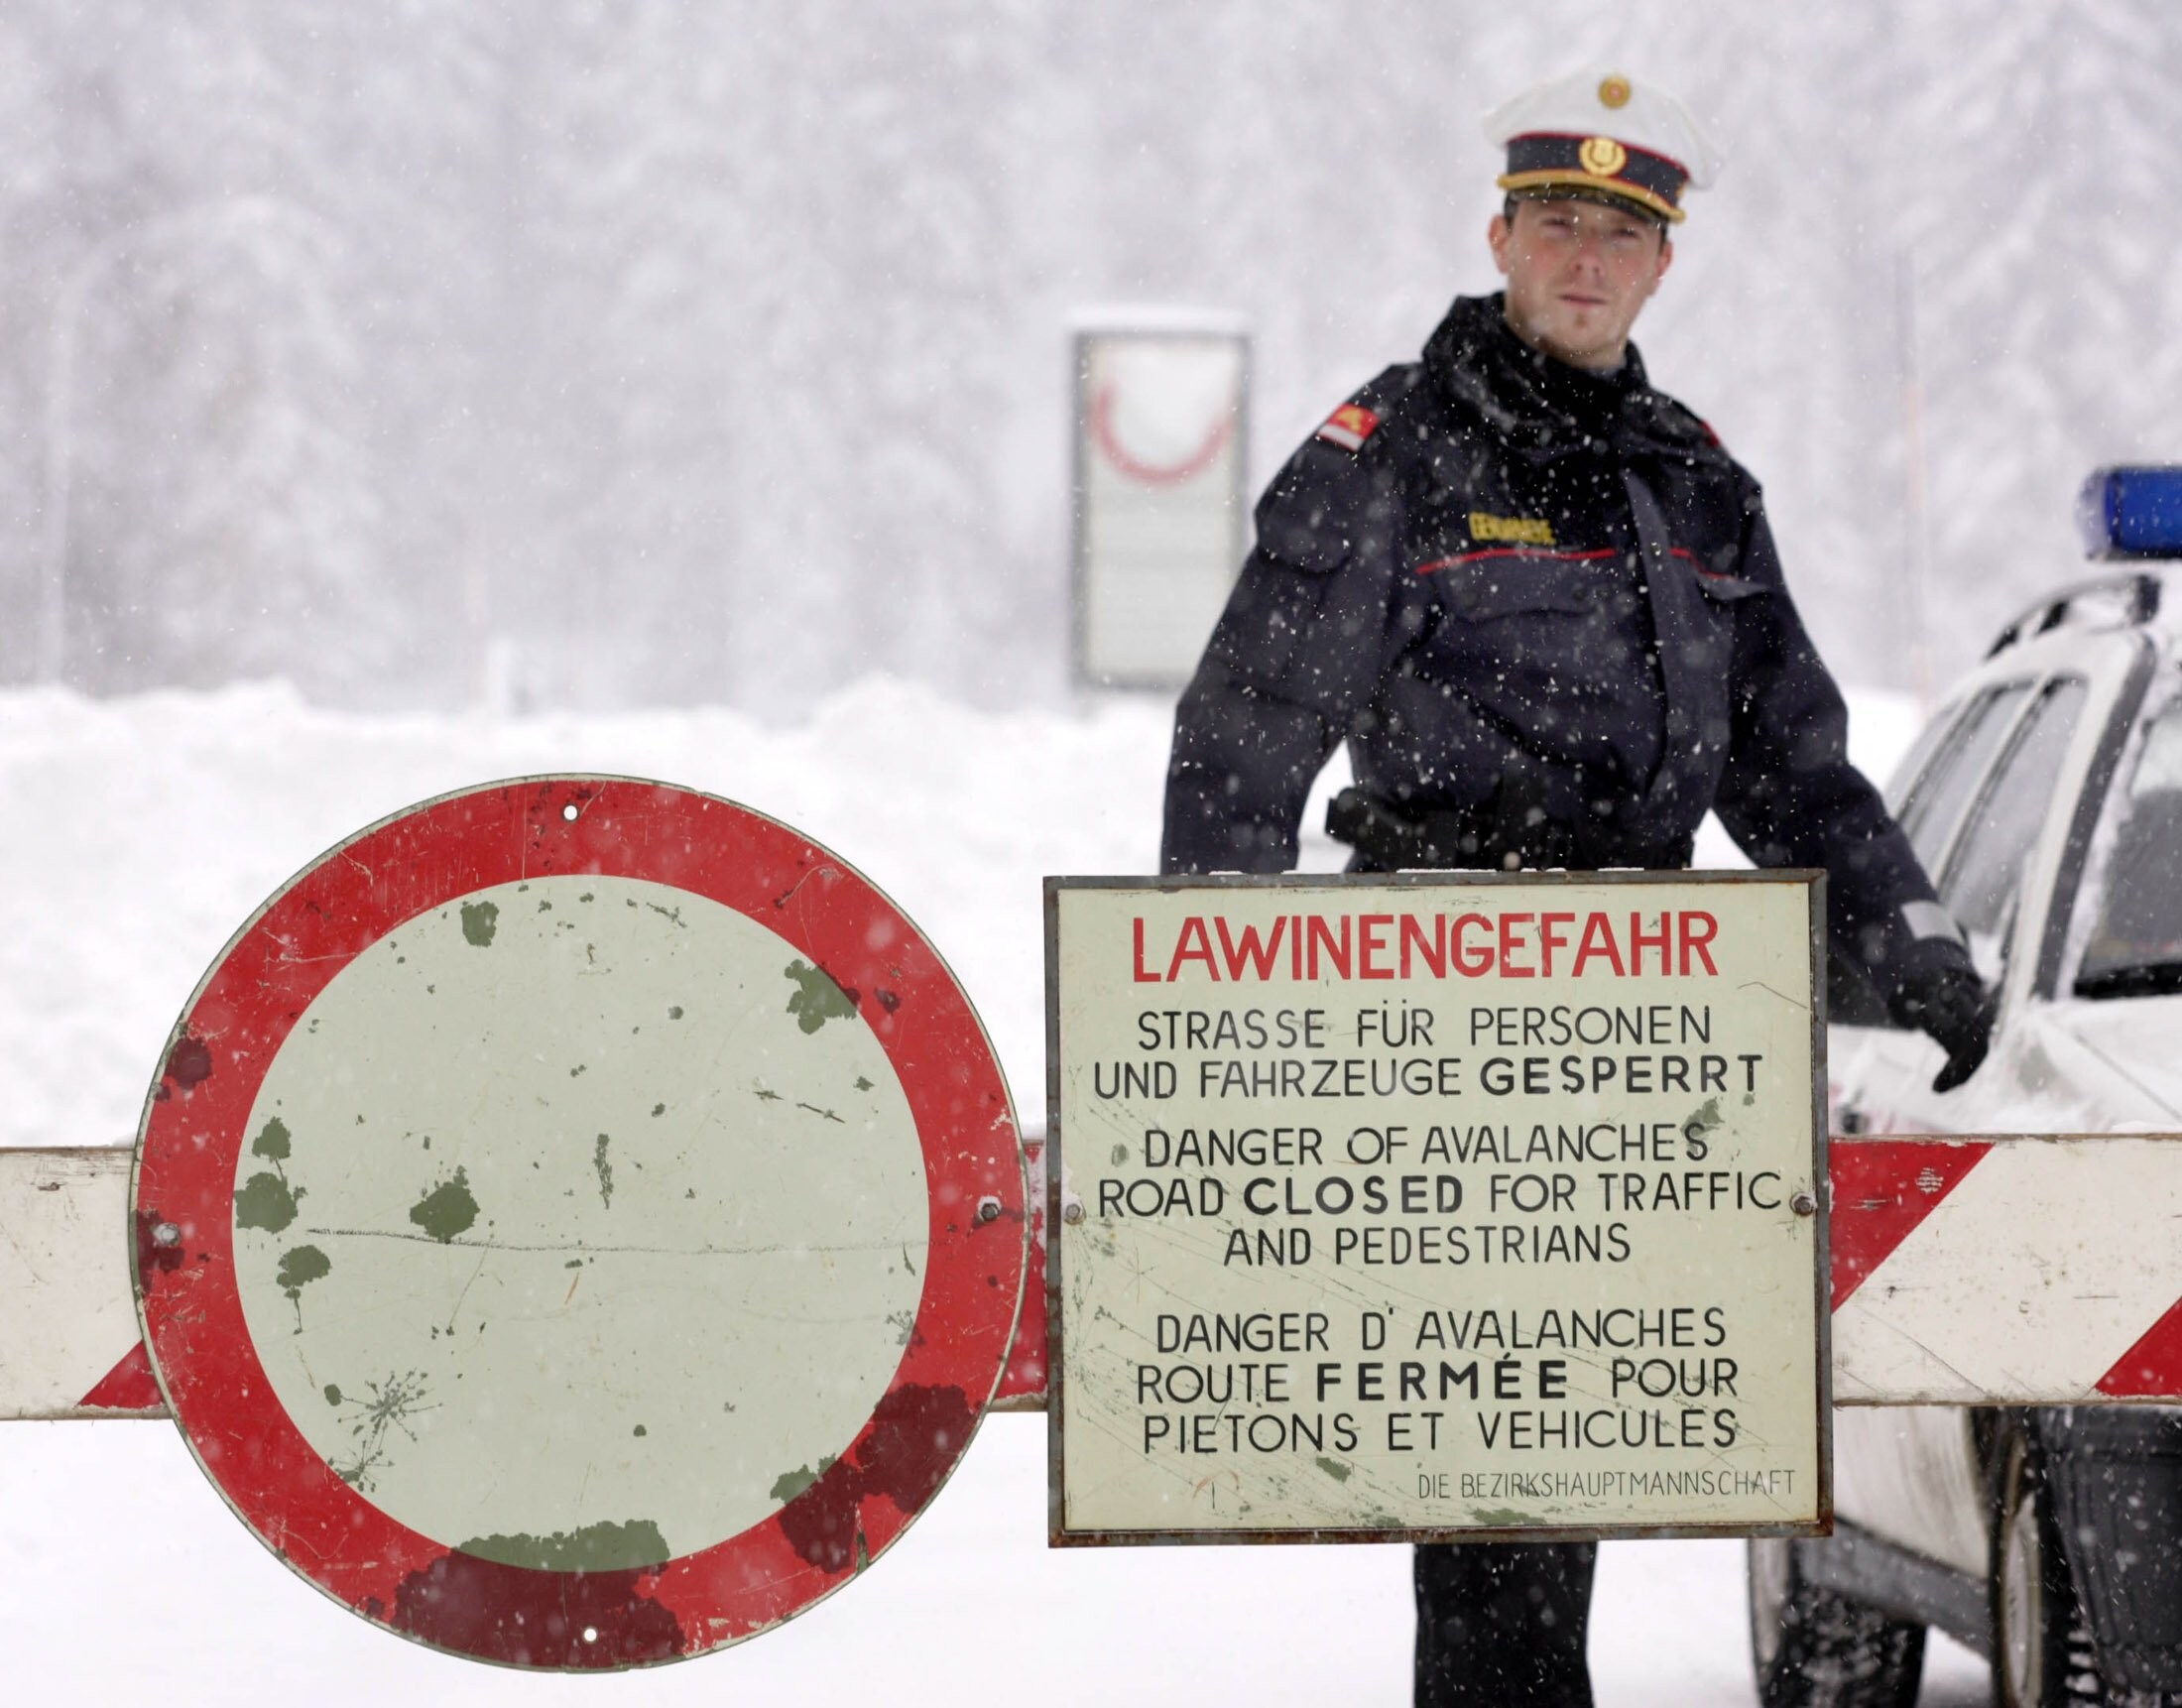 Oostenrijk waarschuwt voor lawinegevaar: “Snowboarden en skiën buiten de pistes is uiterst riskant”